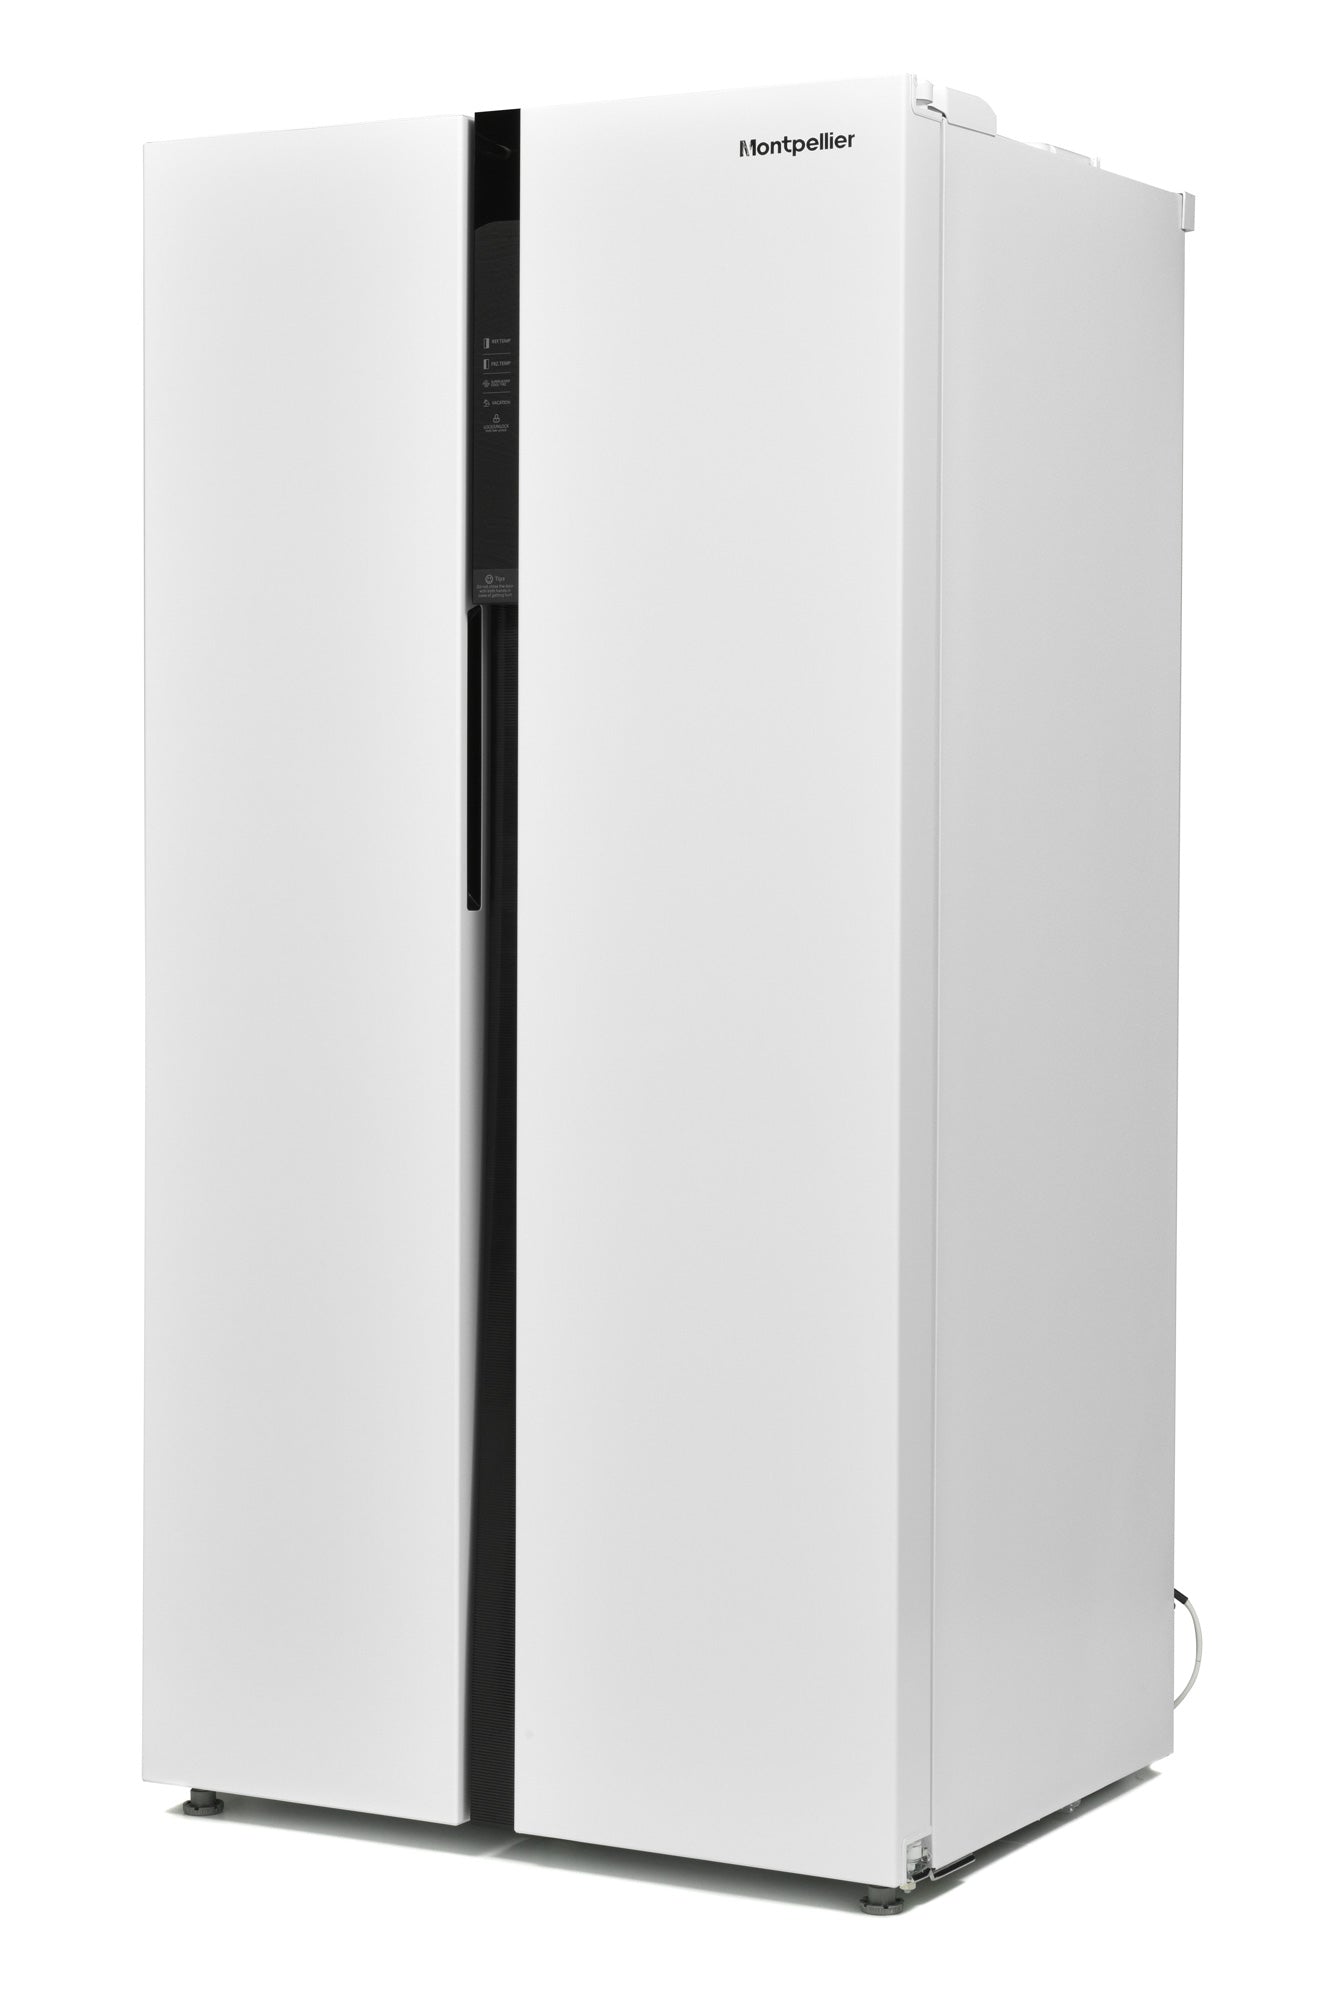 Montpellier M510BW Side-By-Side Fridge Freezer €799.00